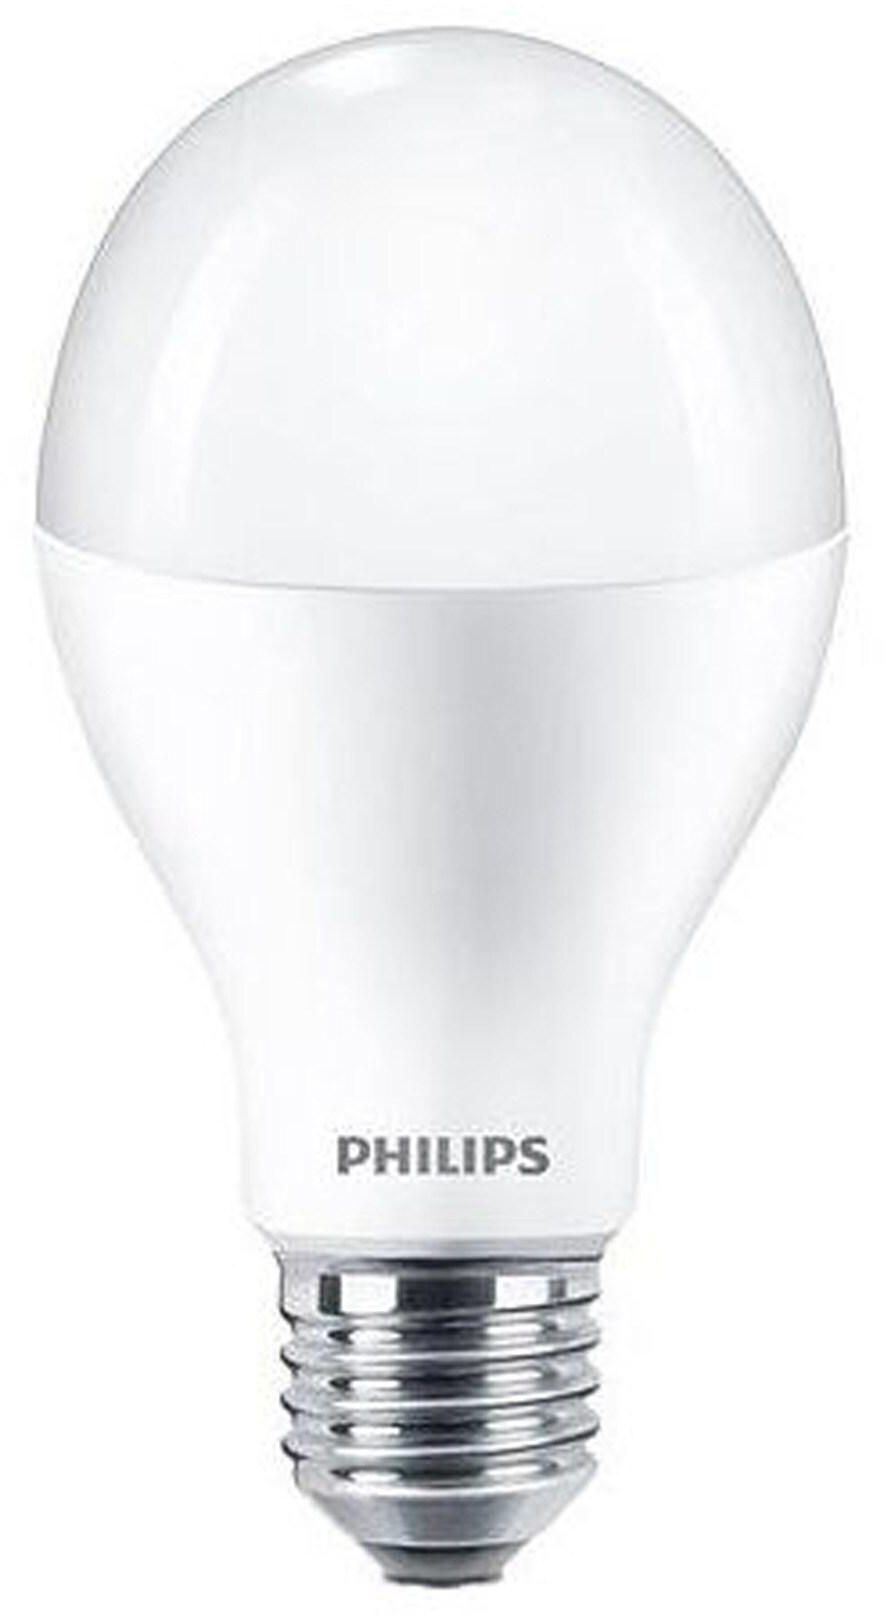 Philips Star LED Bulb - 14 watt - 3000K